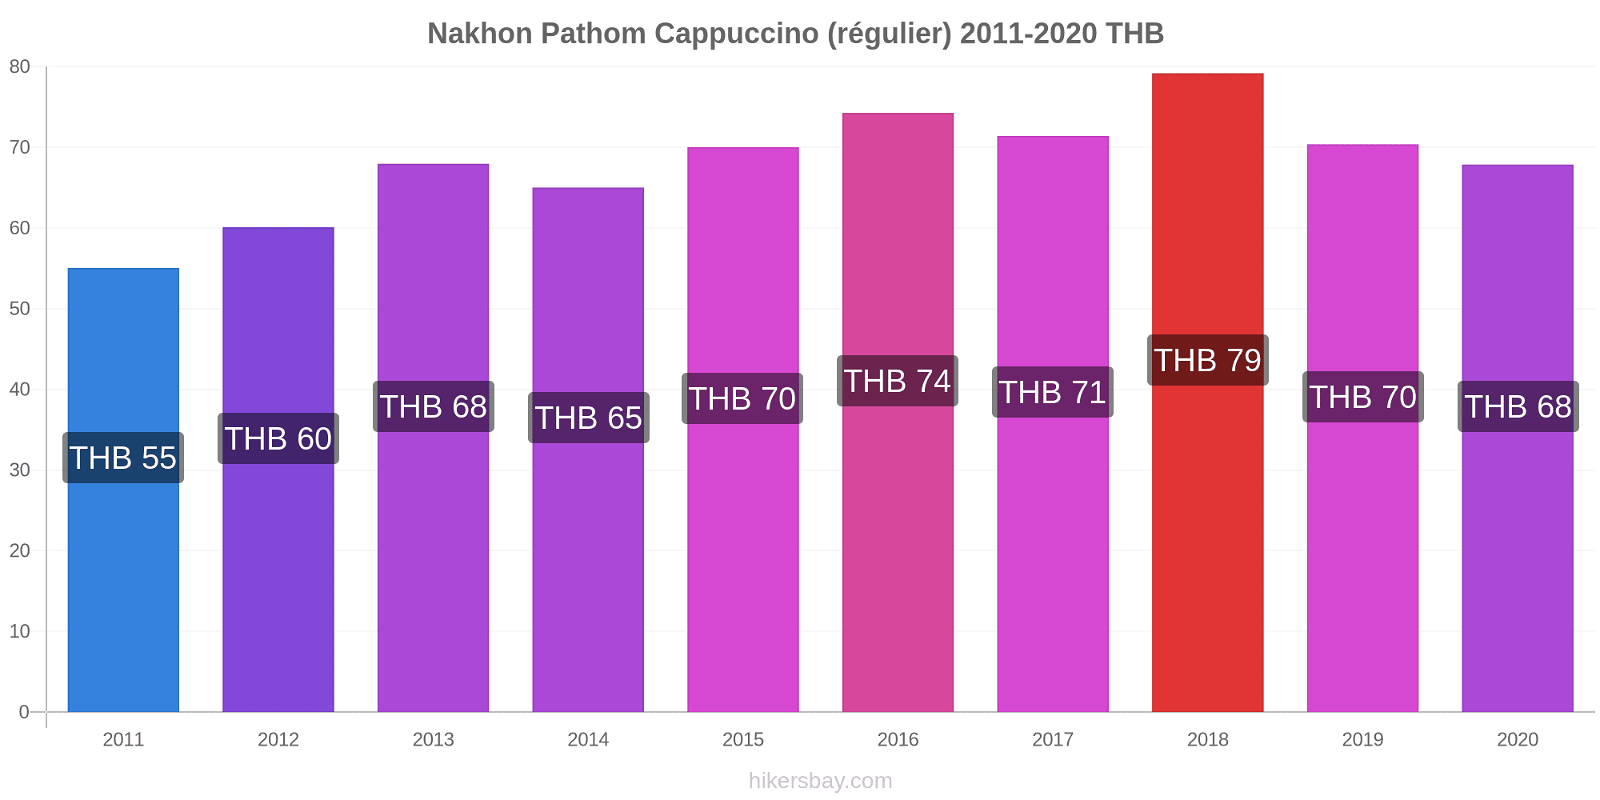 Nakhon Pathom changements de prix Cappuccino (régulier) hikersbay.com